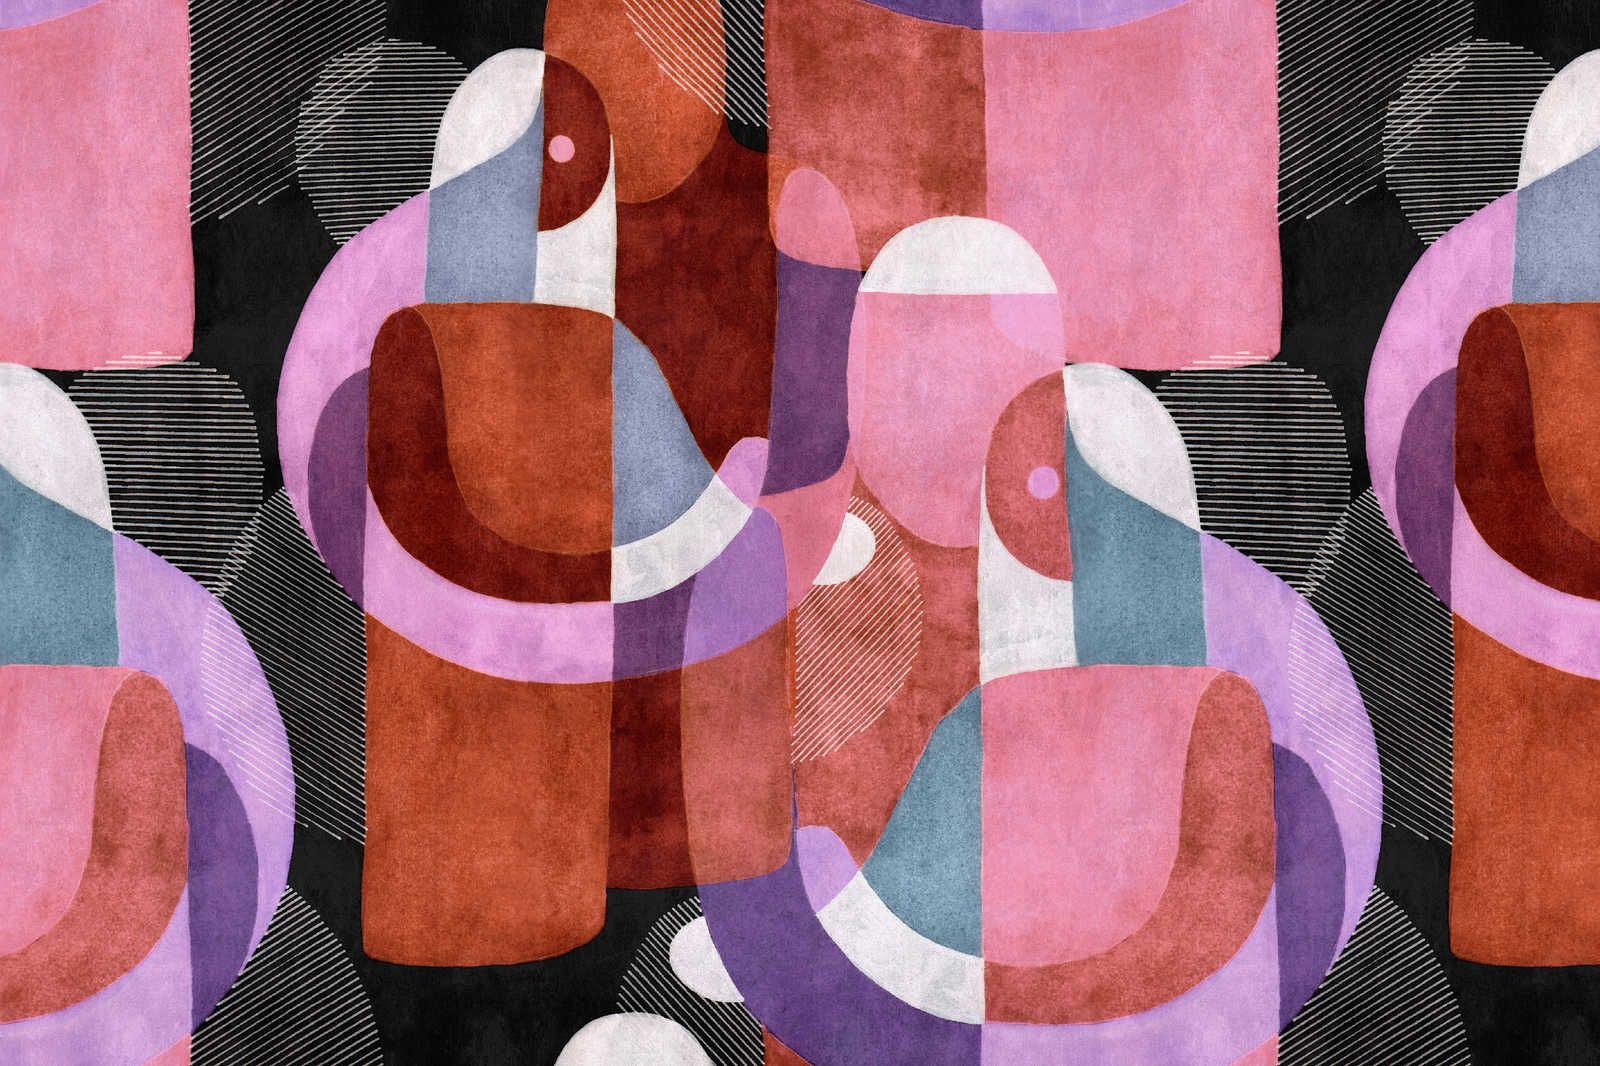             Meeting Place 2 - Quadro su tela con disegno etno astratto in nero e rosa - 0,90 m x 0,60 m
        